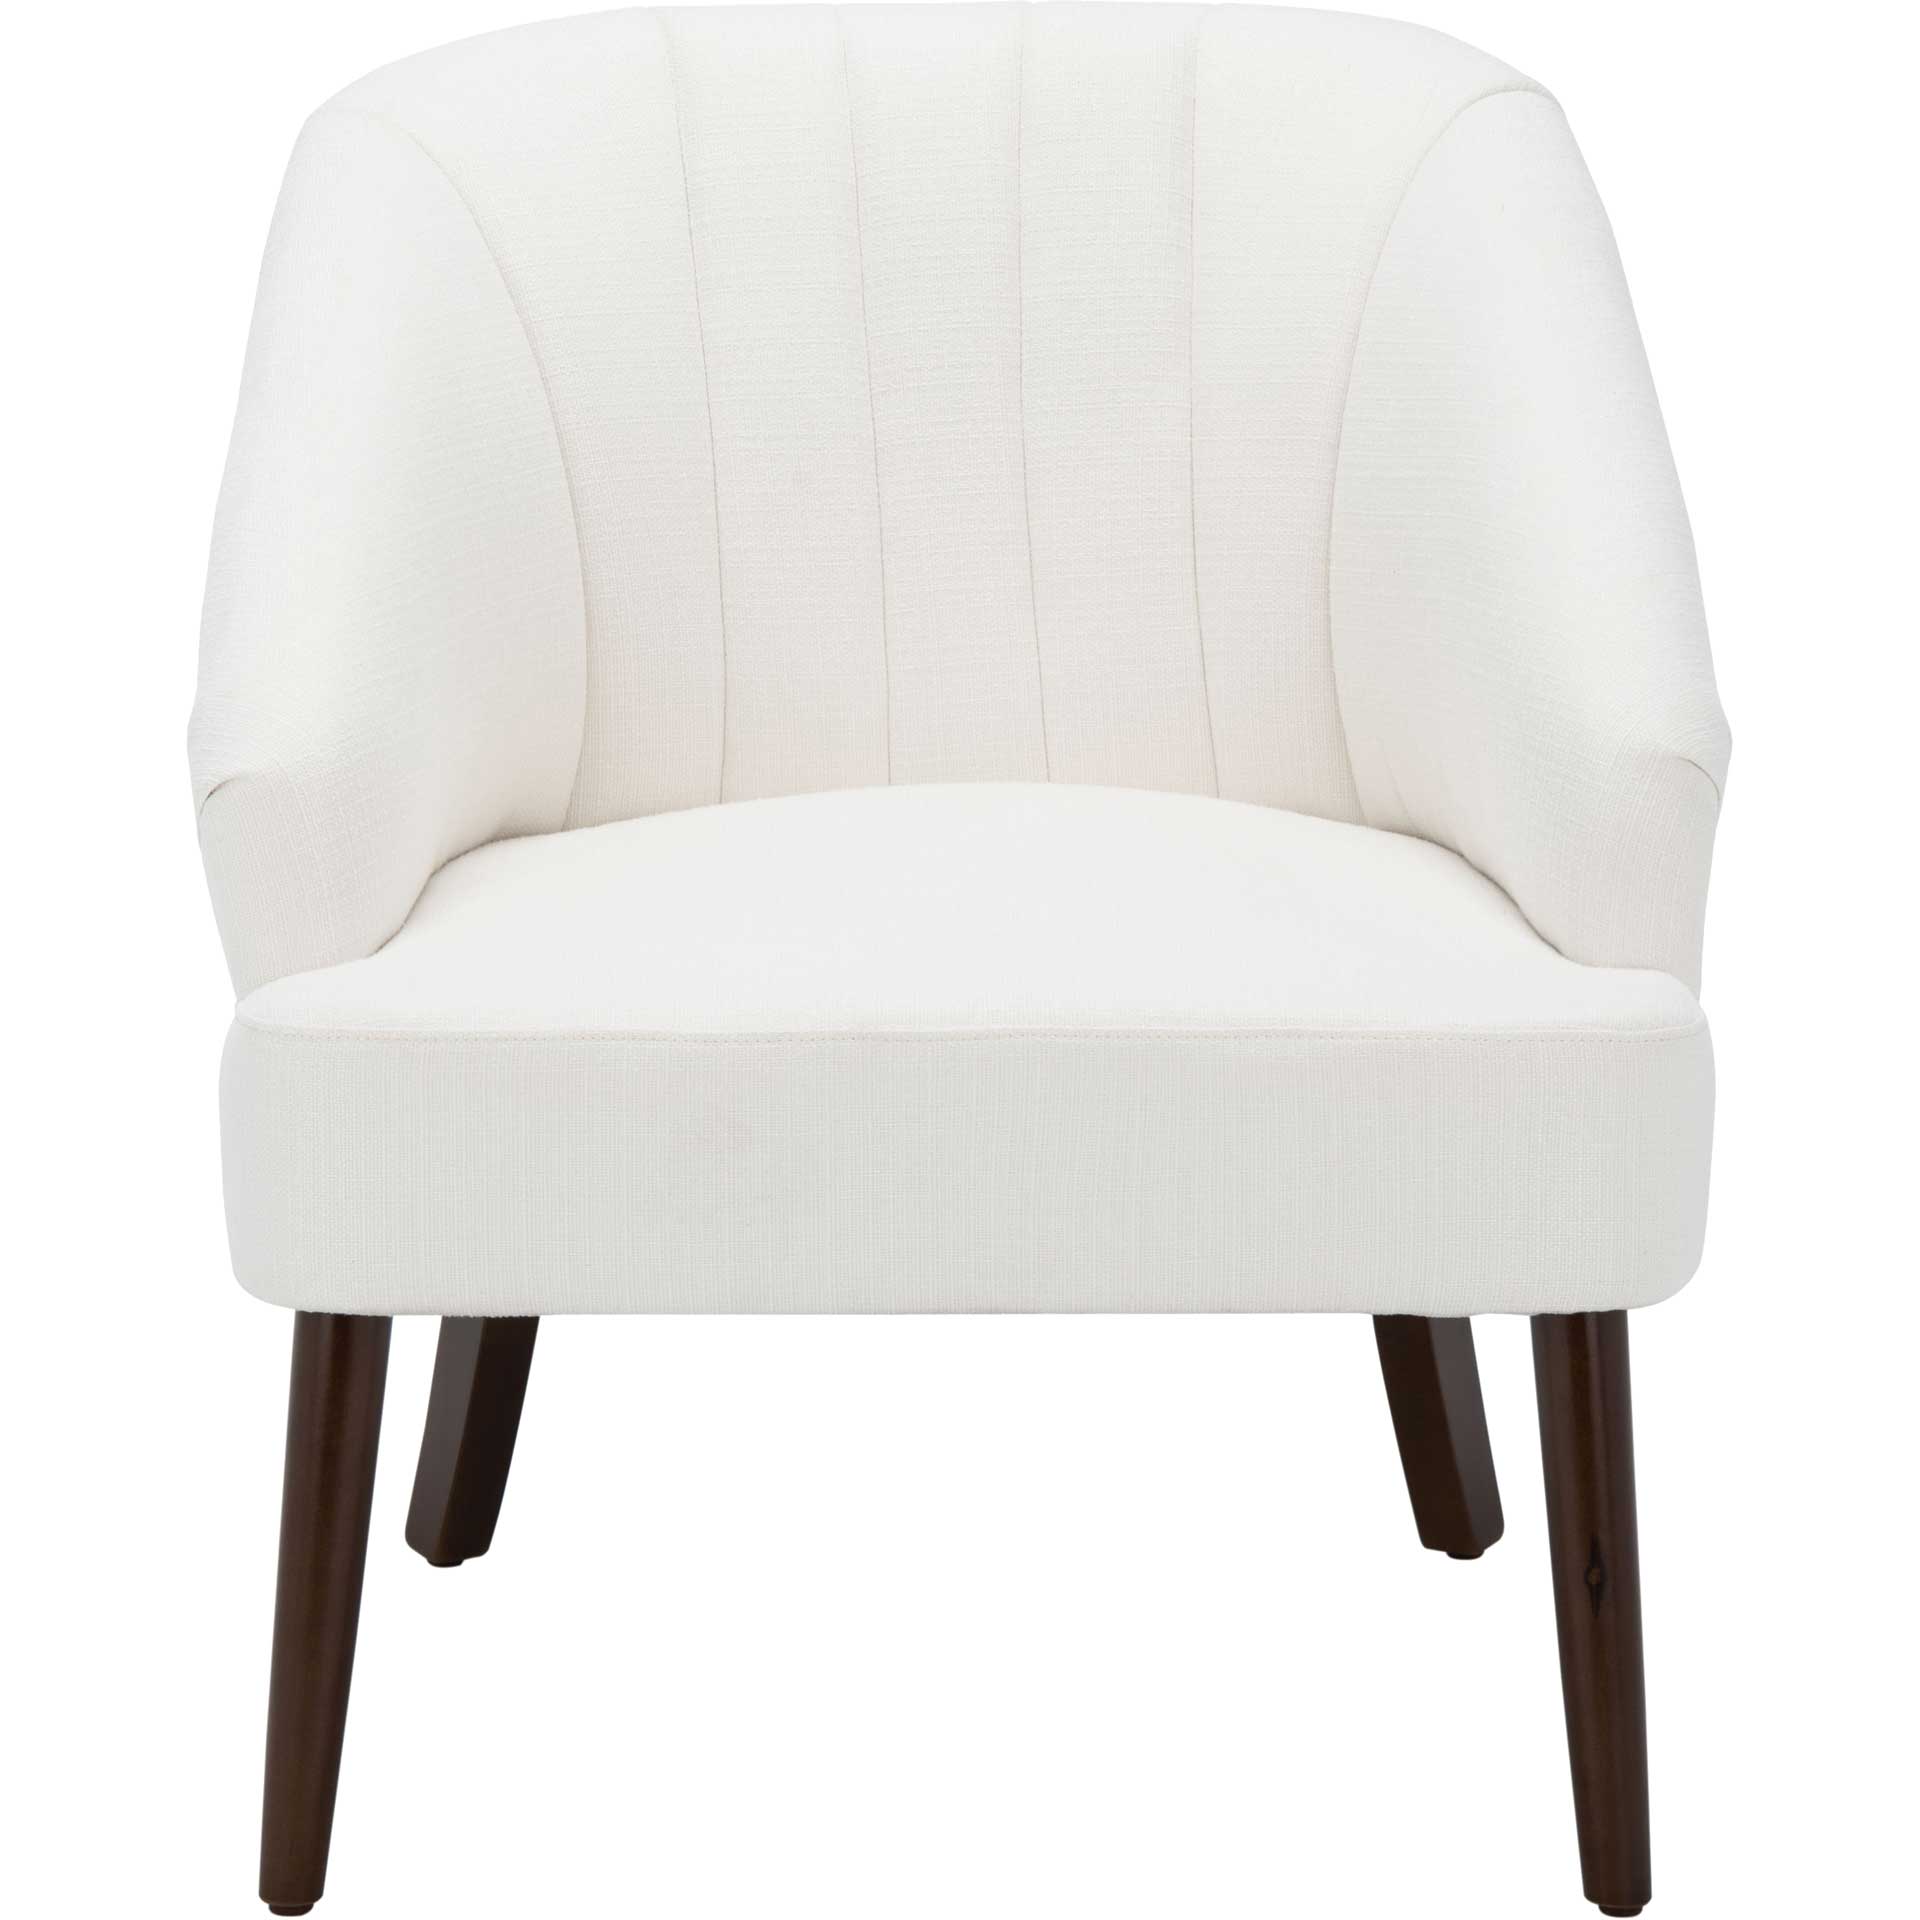 Quacey Accent Chair White